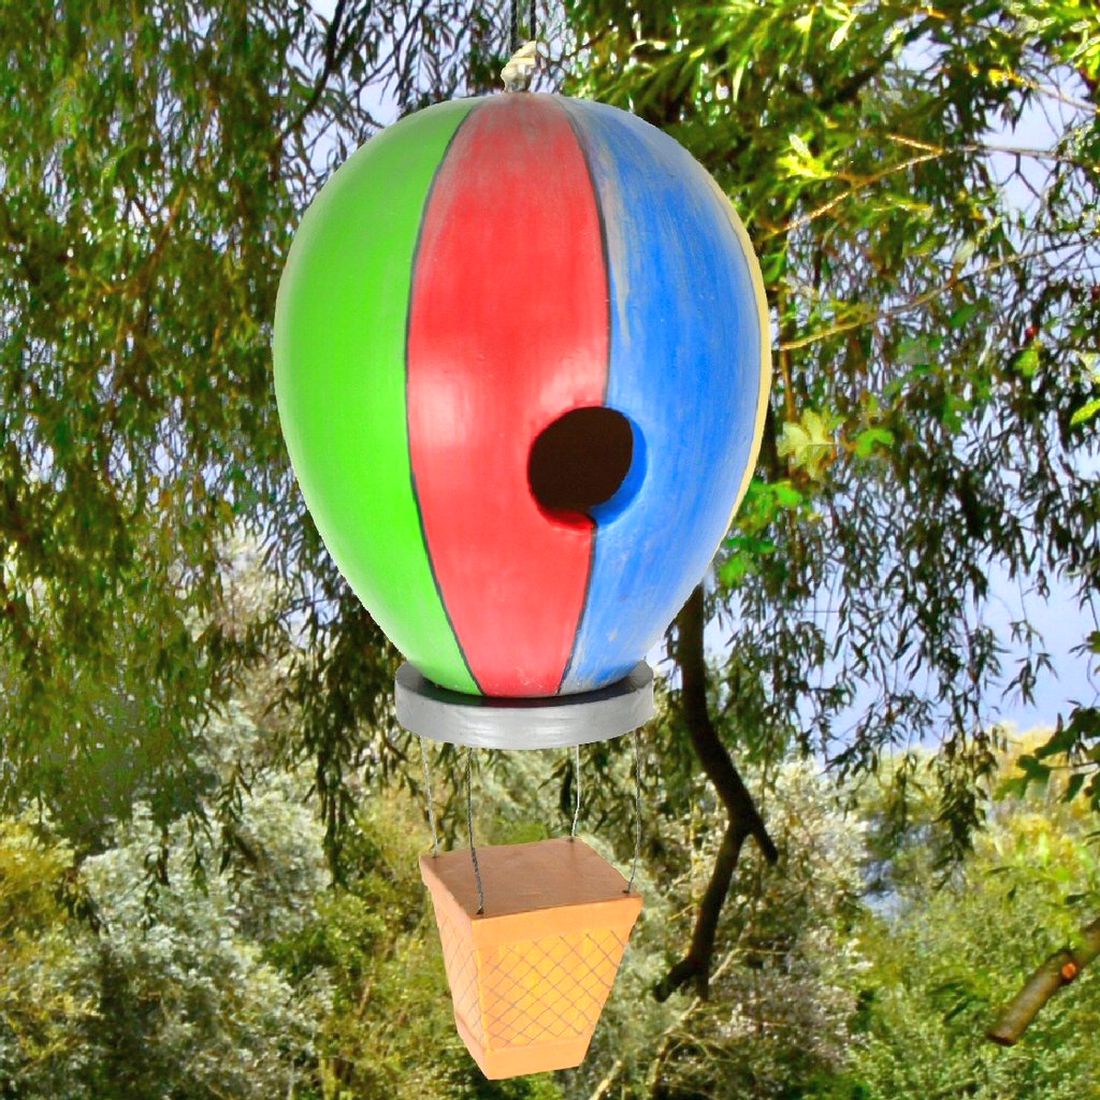 Americana Hot Air Balloon Backyard Birdhouse